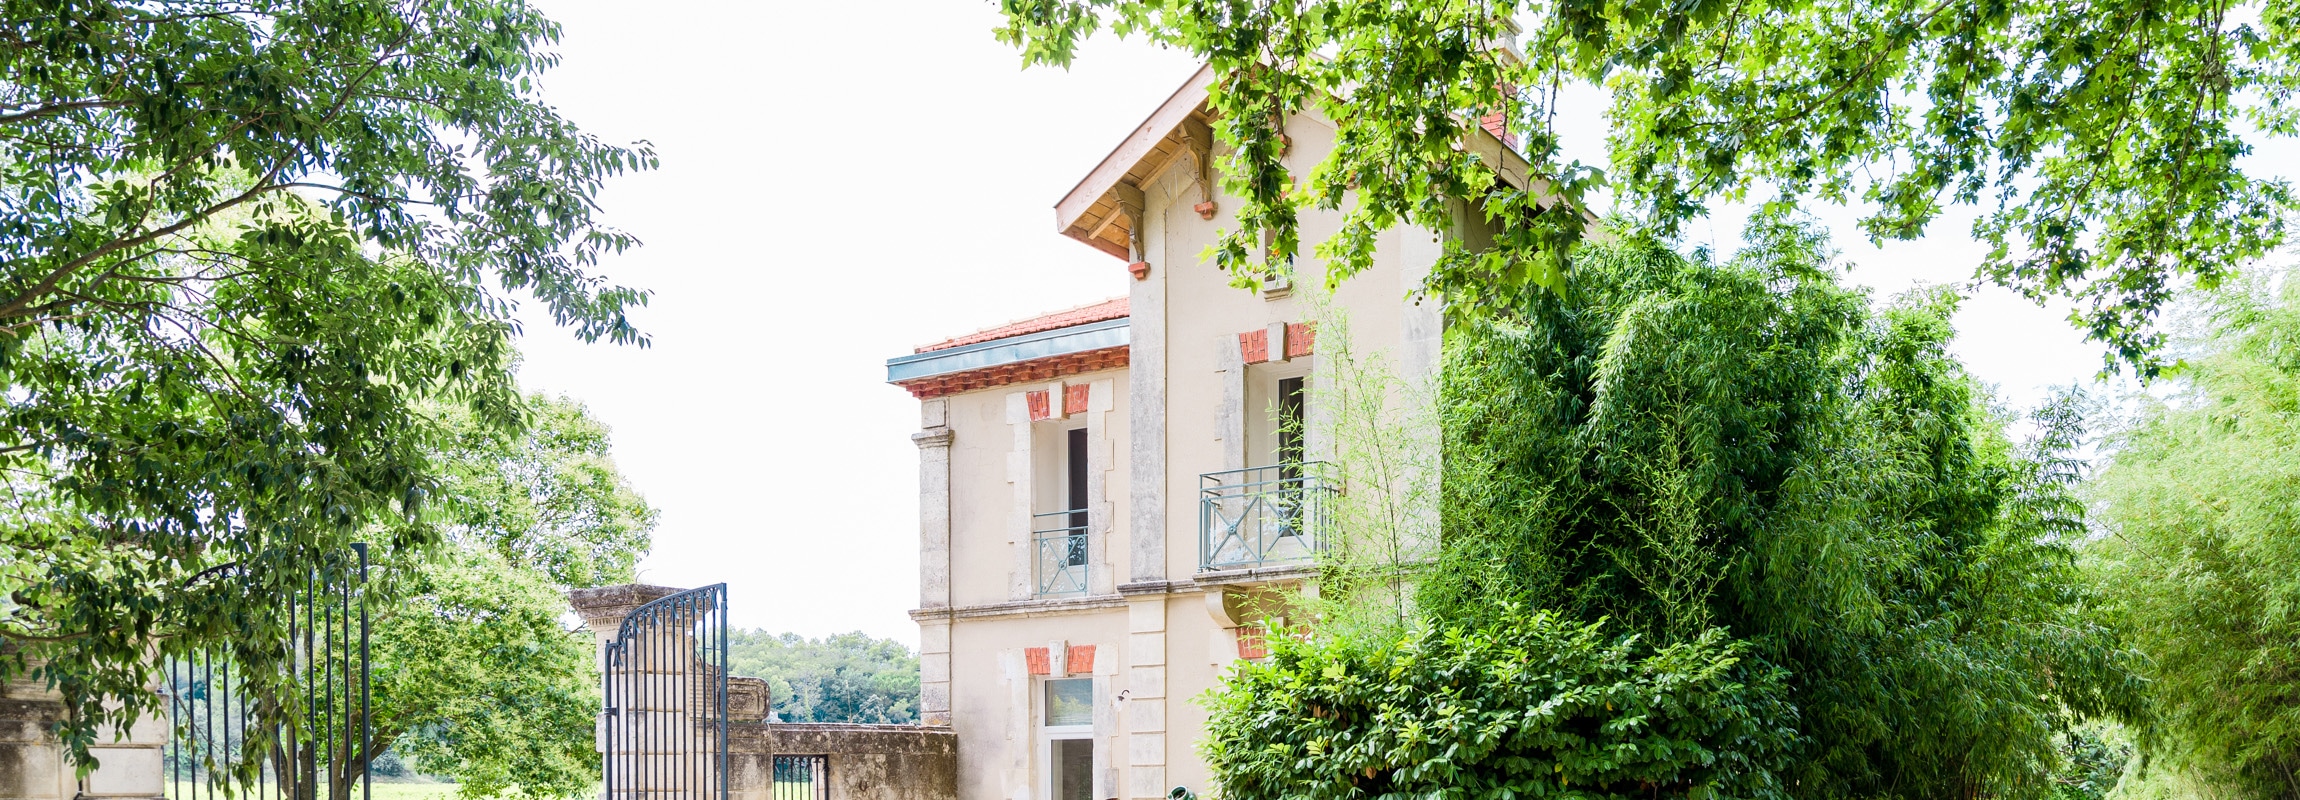 La Maison, Château de Montcaud, gite en Provence